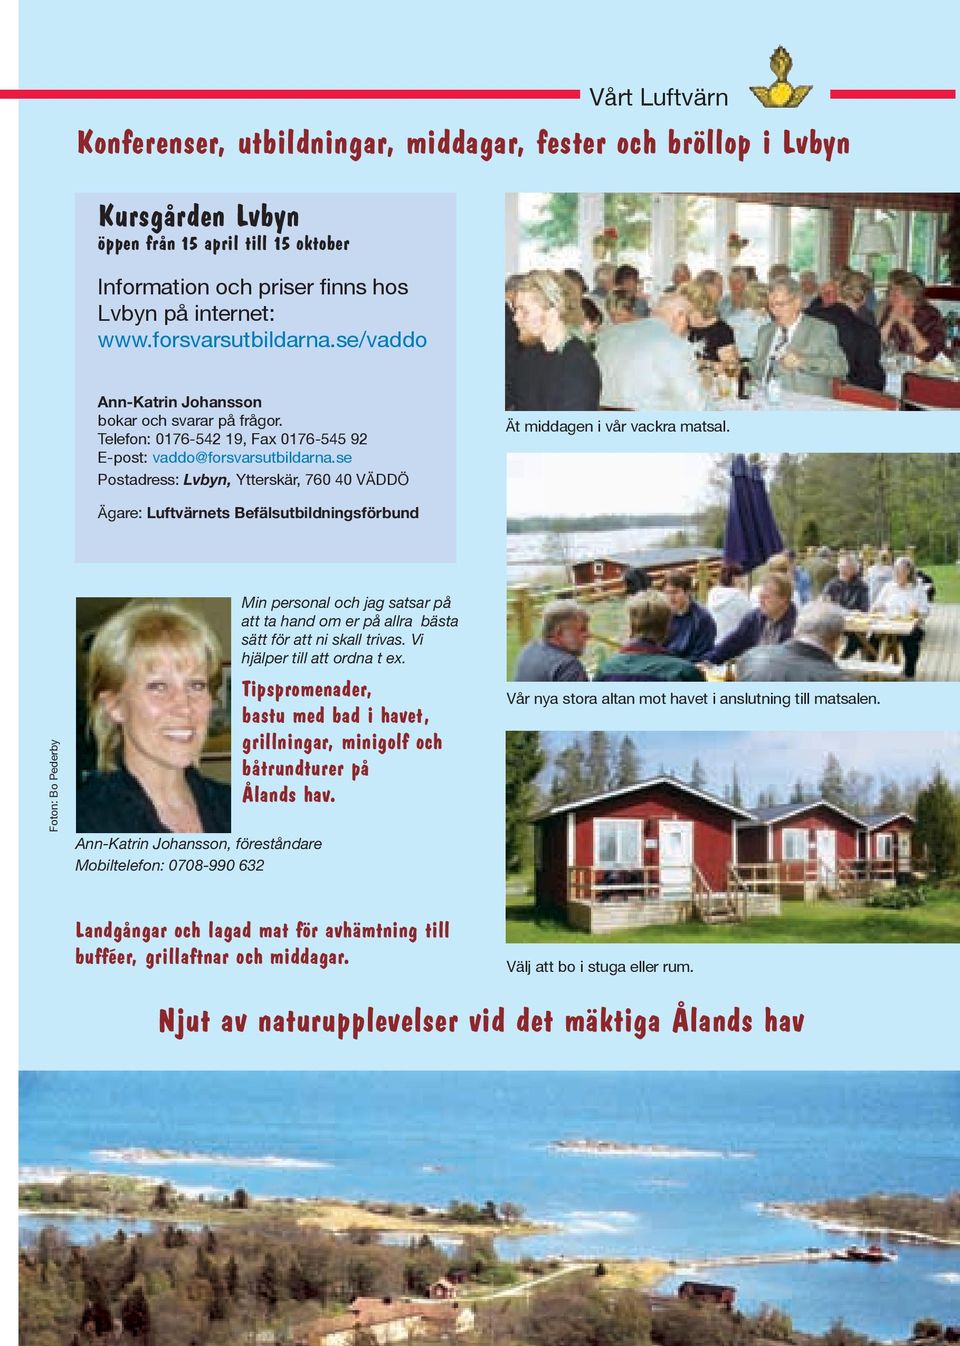 se Postadress: Lvbyn, Ytterskär, 760 40 VÄDDÖ Ät middagen i vår vackra matsal.